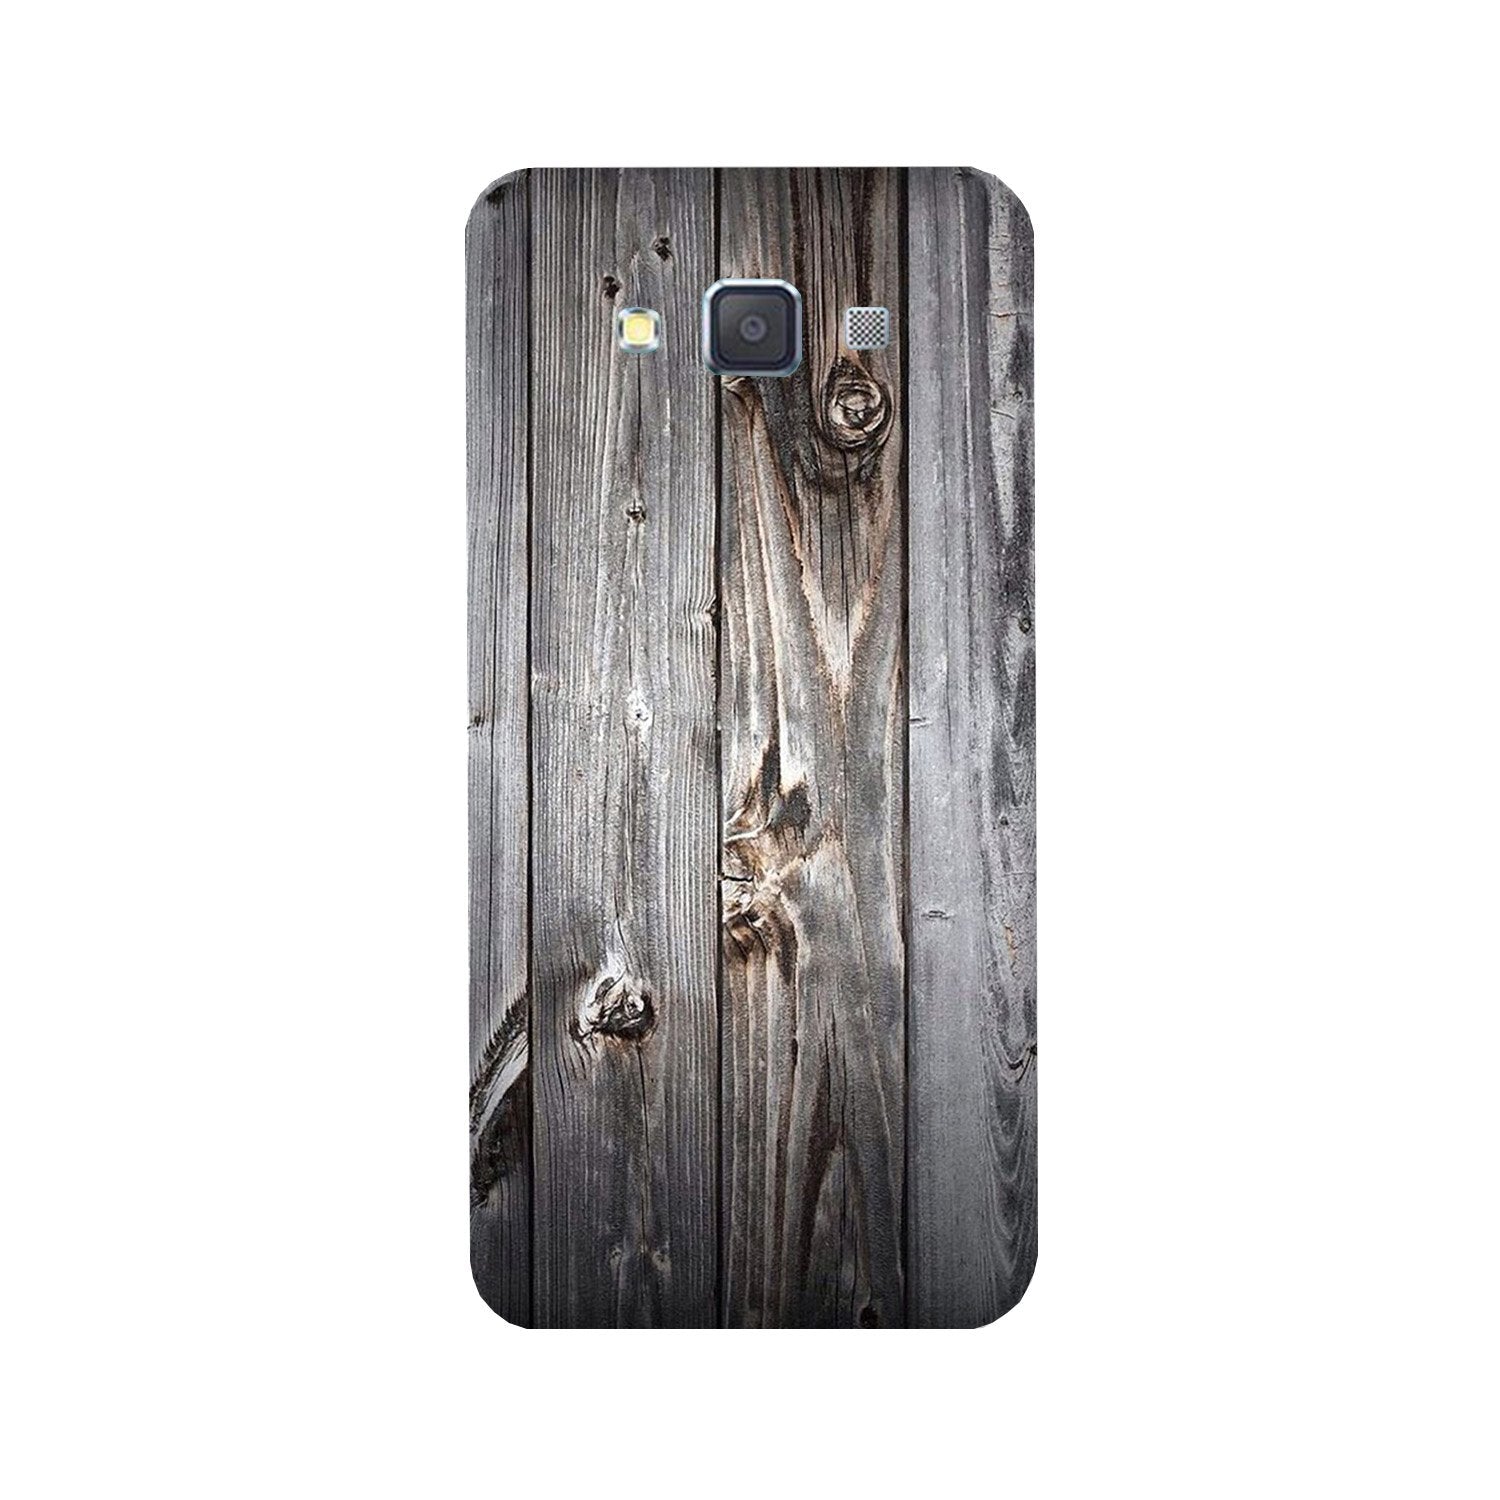 Wooden Look Case for Galaxy E5  (Design - 114)